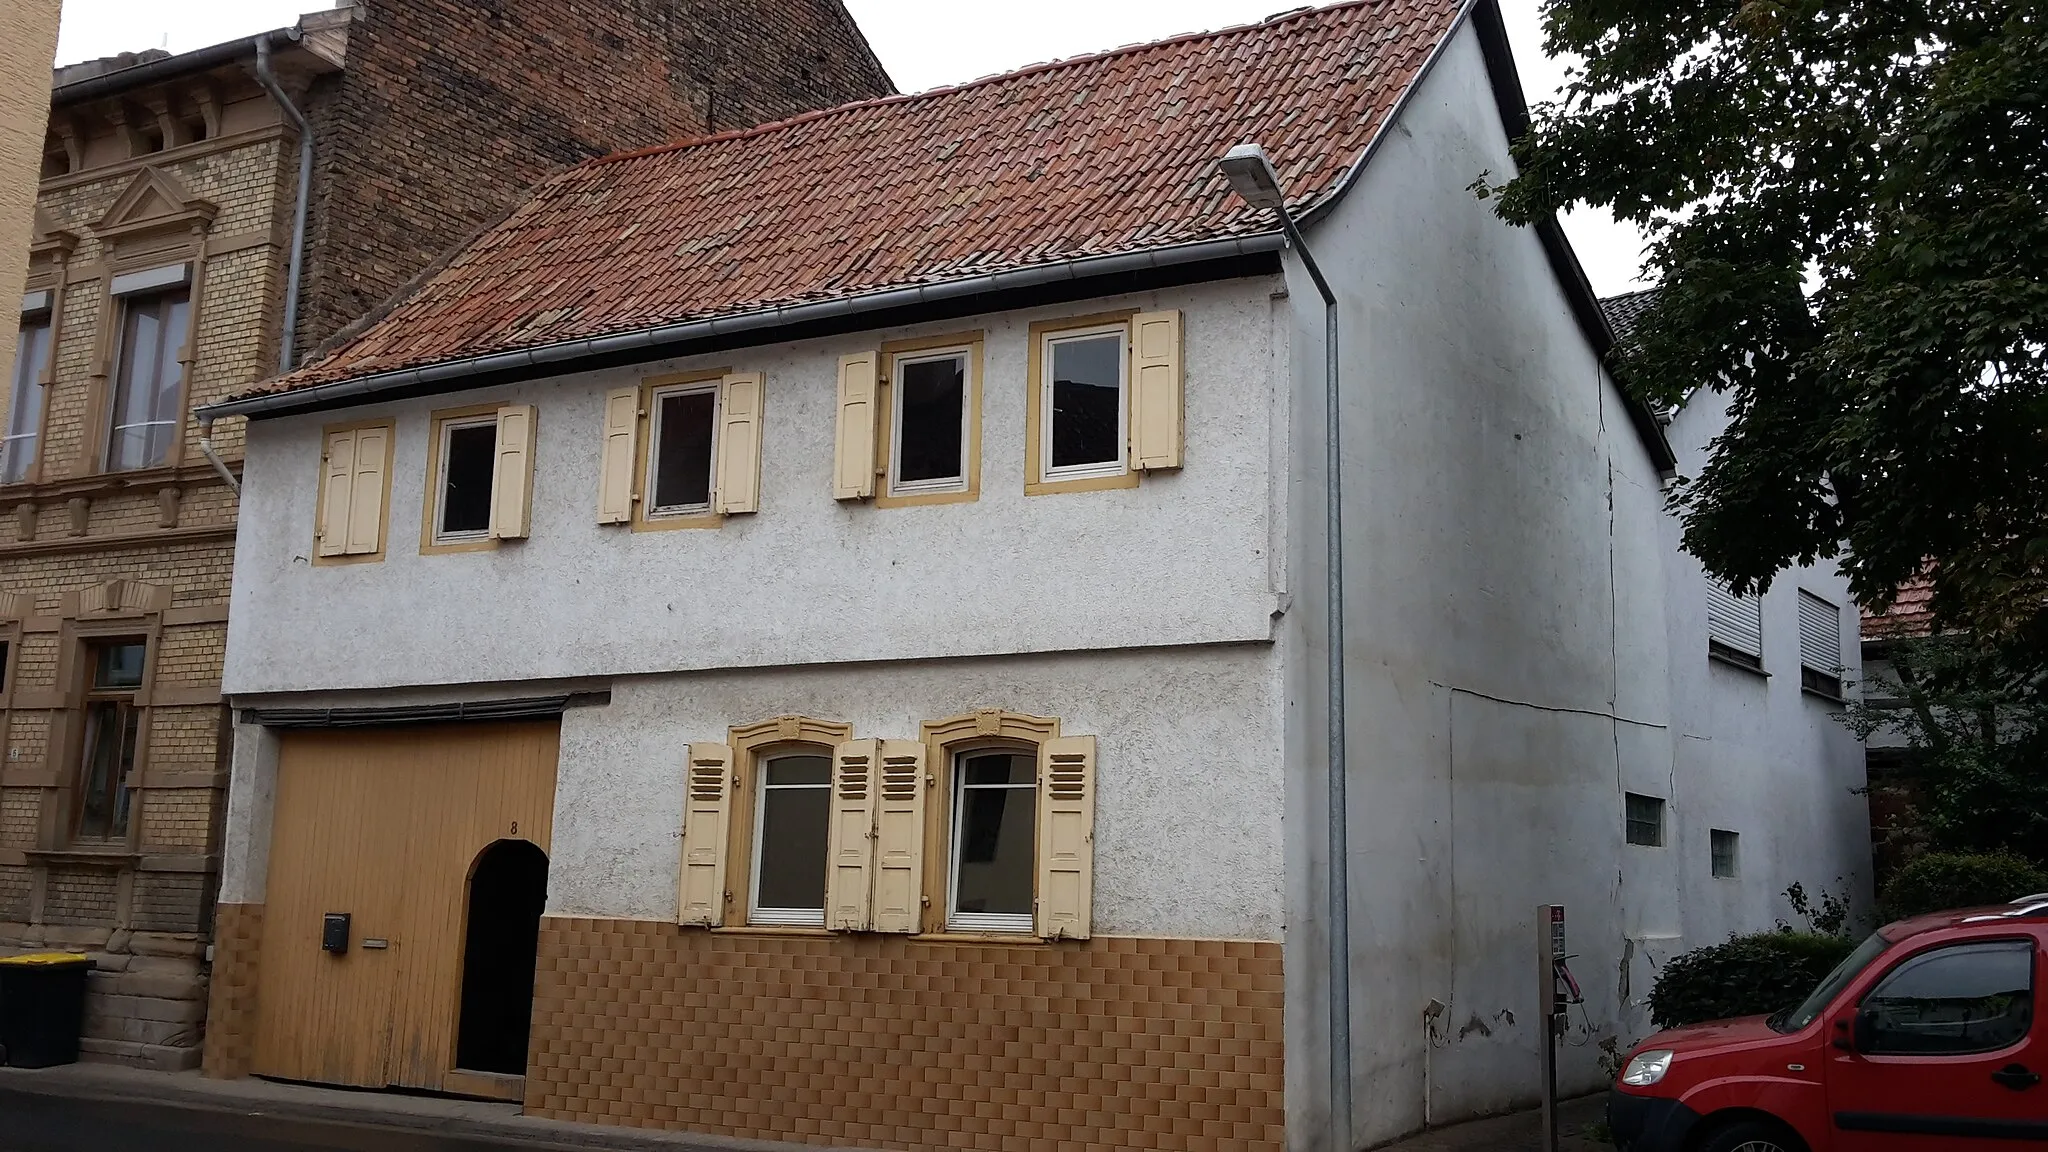 Photo showing: Wohnhaus von 1781 Backhausstr.8 in Horrweiler